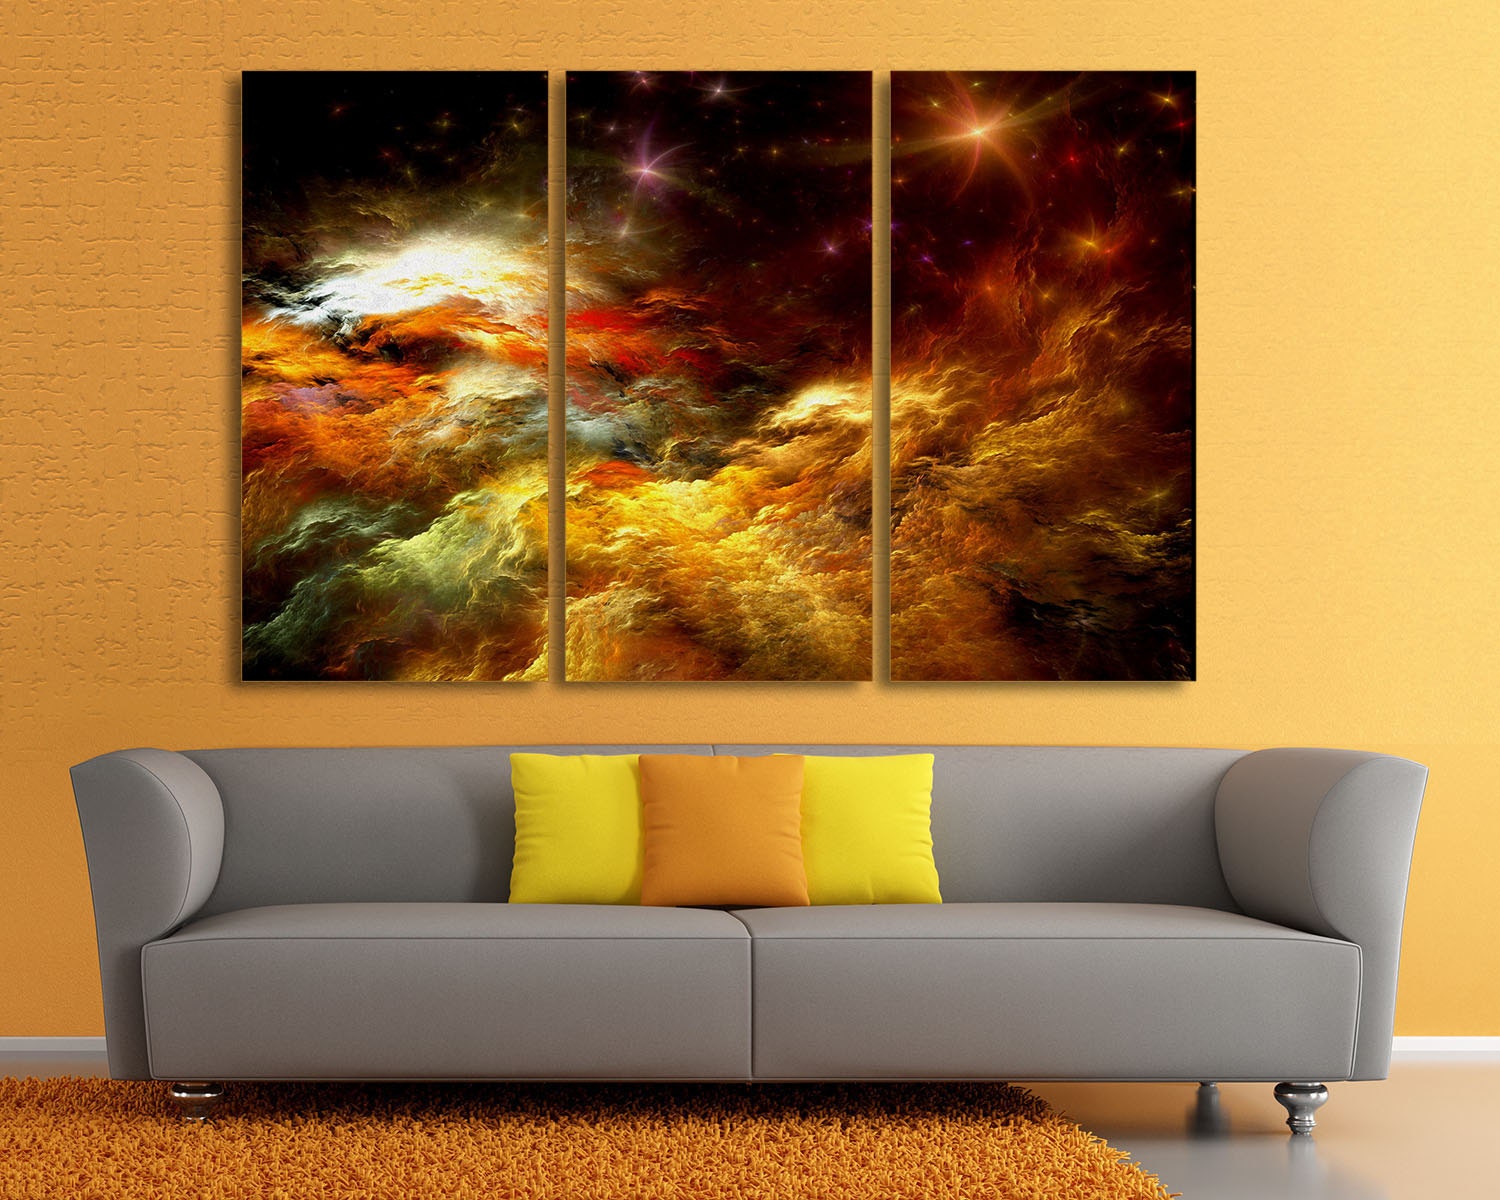 3 Panel Split Triptych Canvas Print. Colorful Cloud